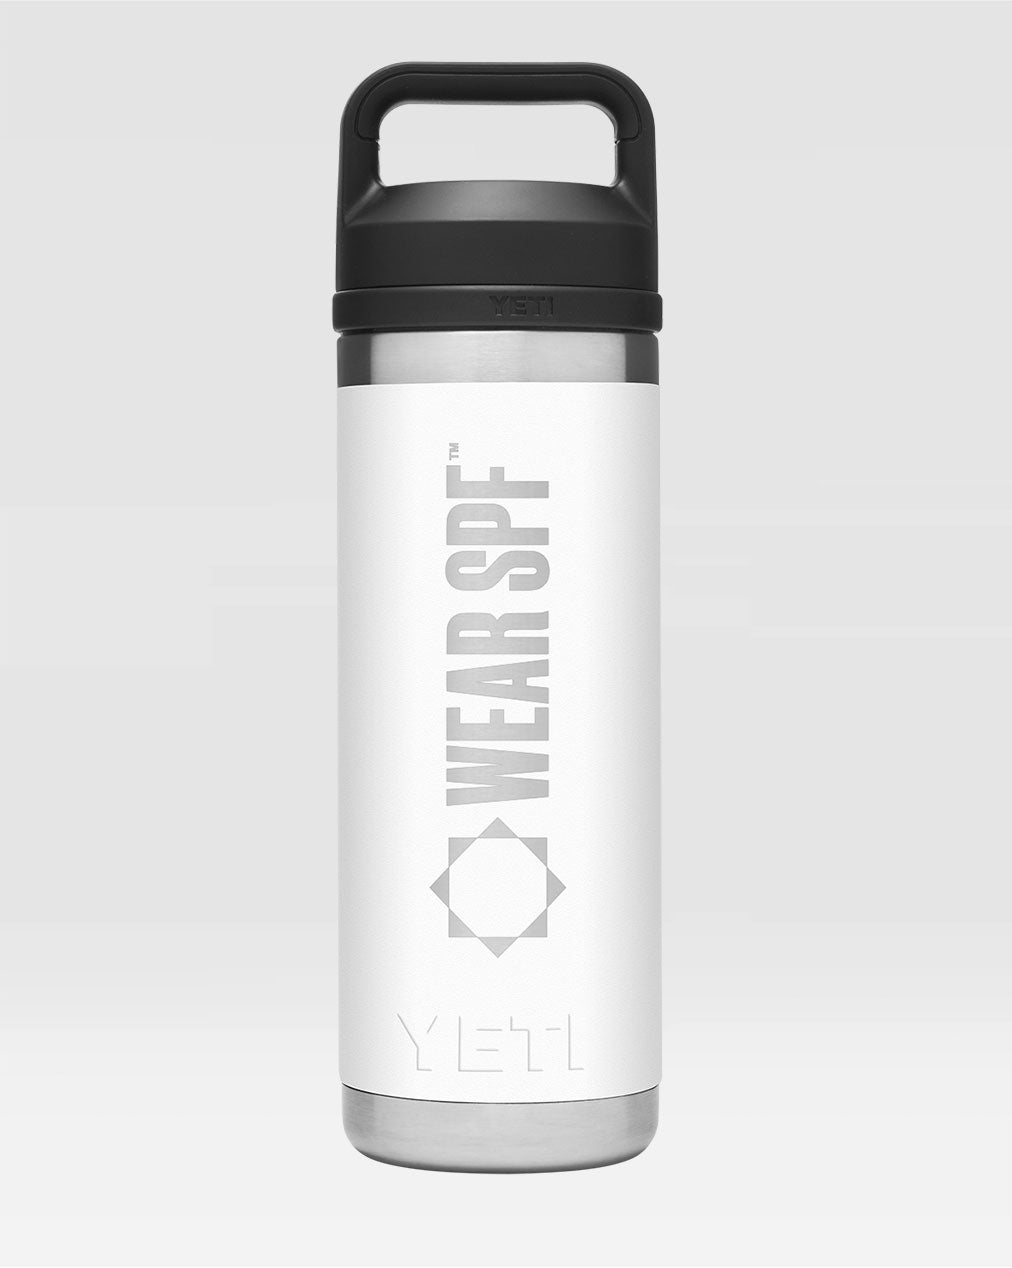 WearSPF Yeti Water Bottle